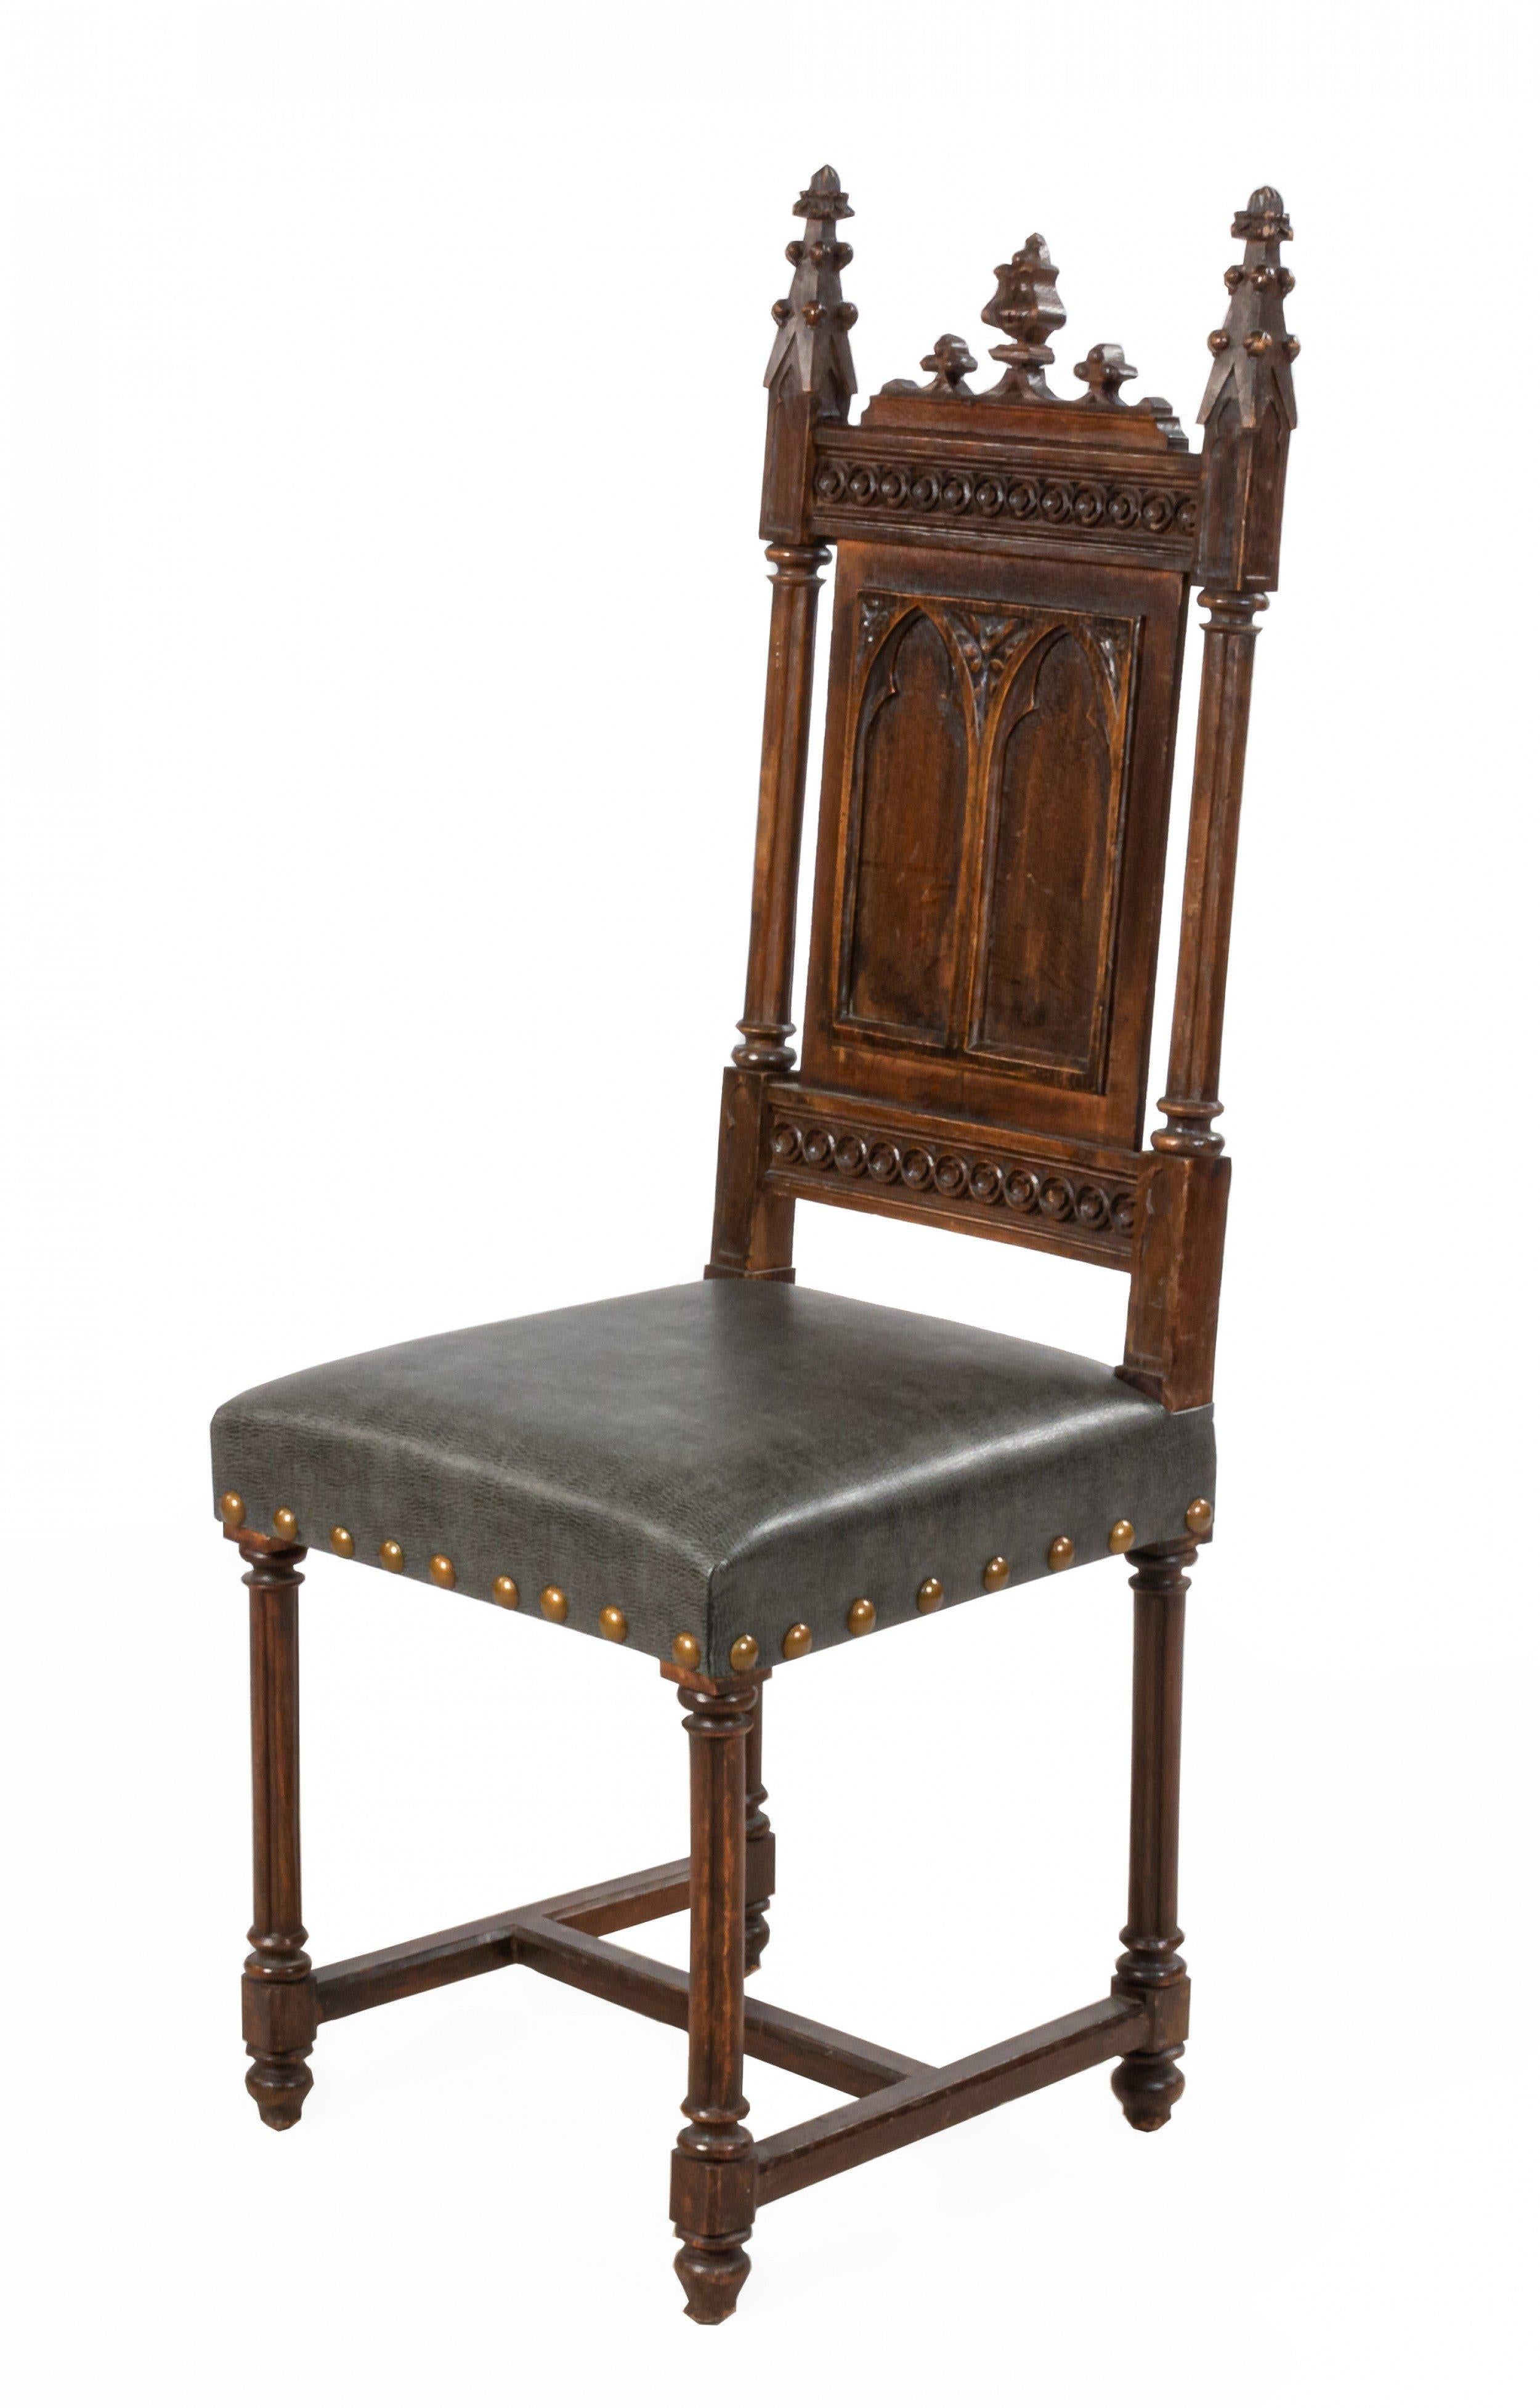 Ensemble de 11 chaises de style néo-gothique anglais (19e siècle) en chêne à dossier en panneaux latéraux avec fleurons et sièges en cuir gris.